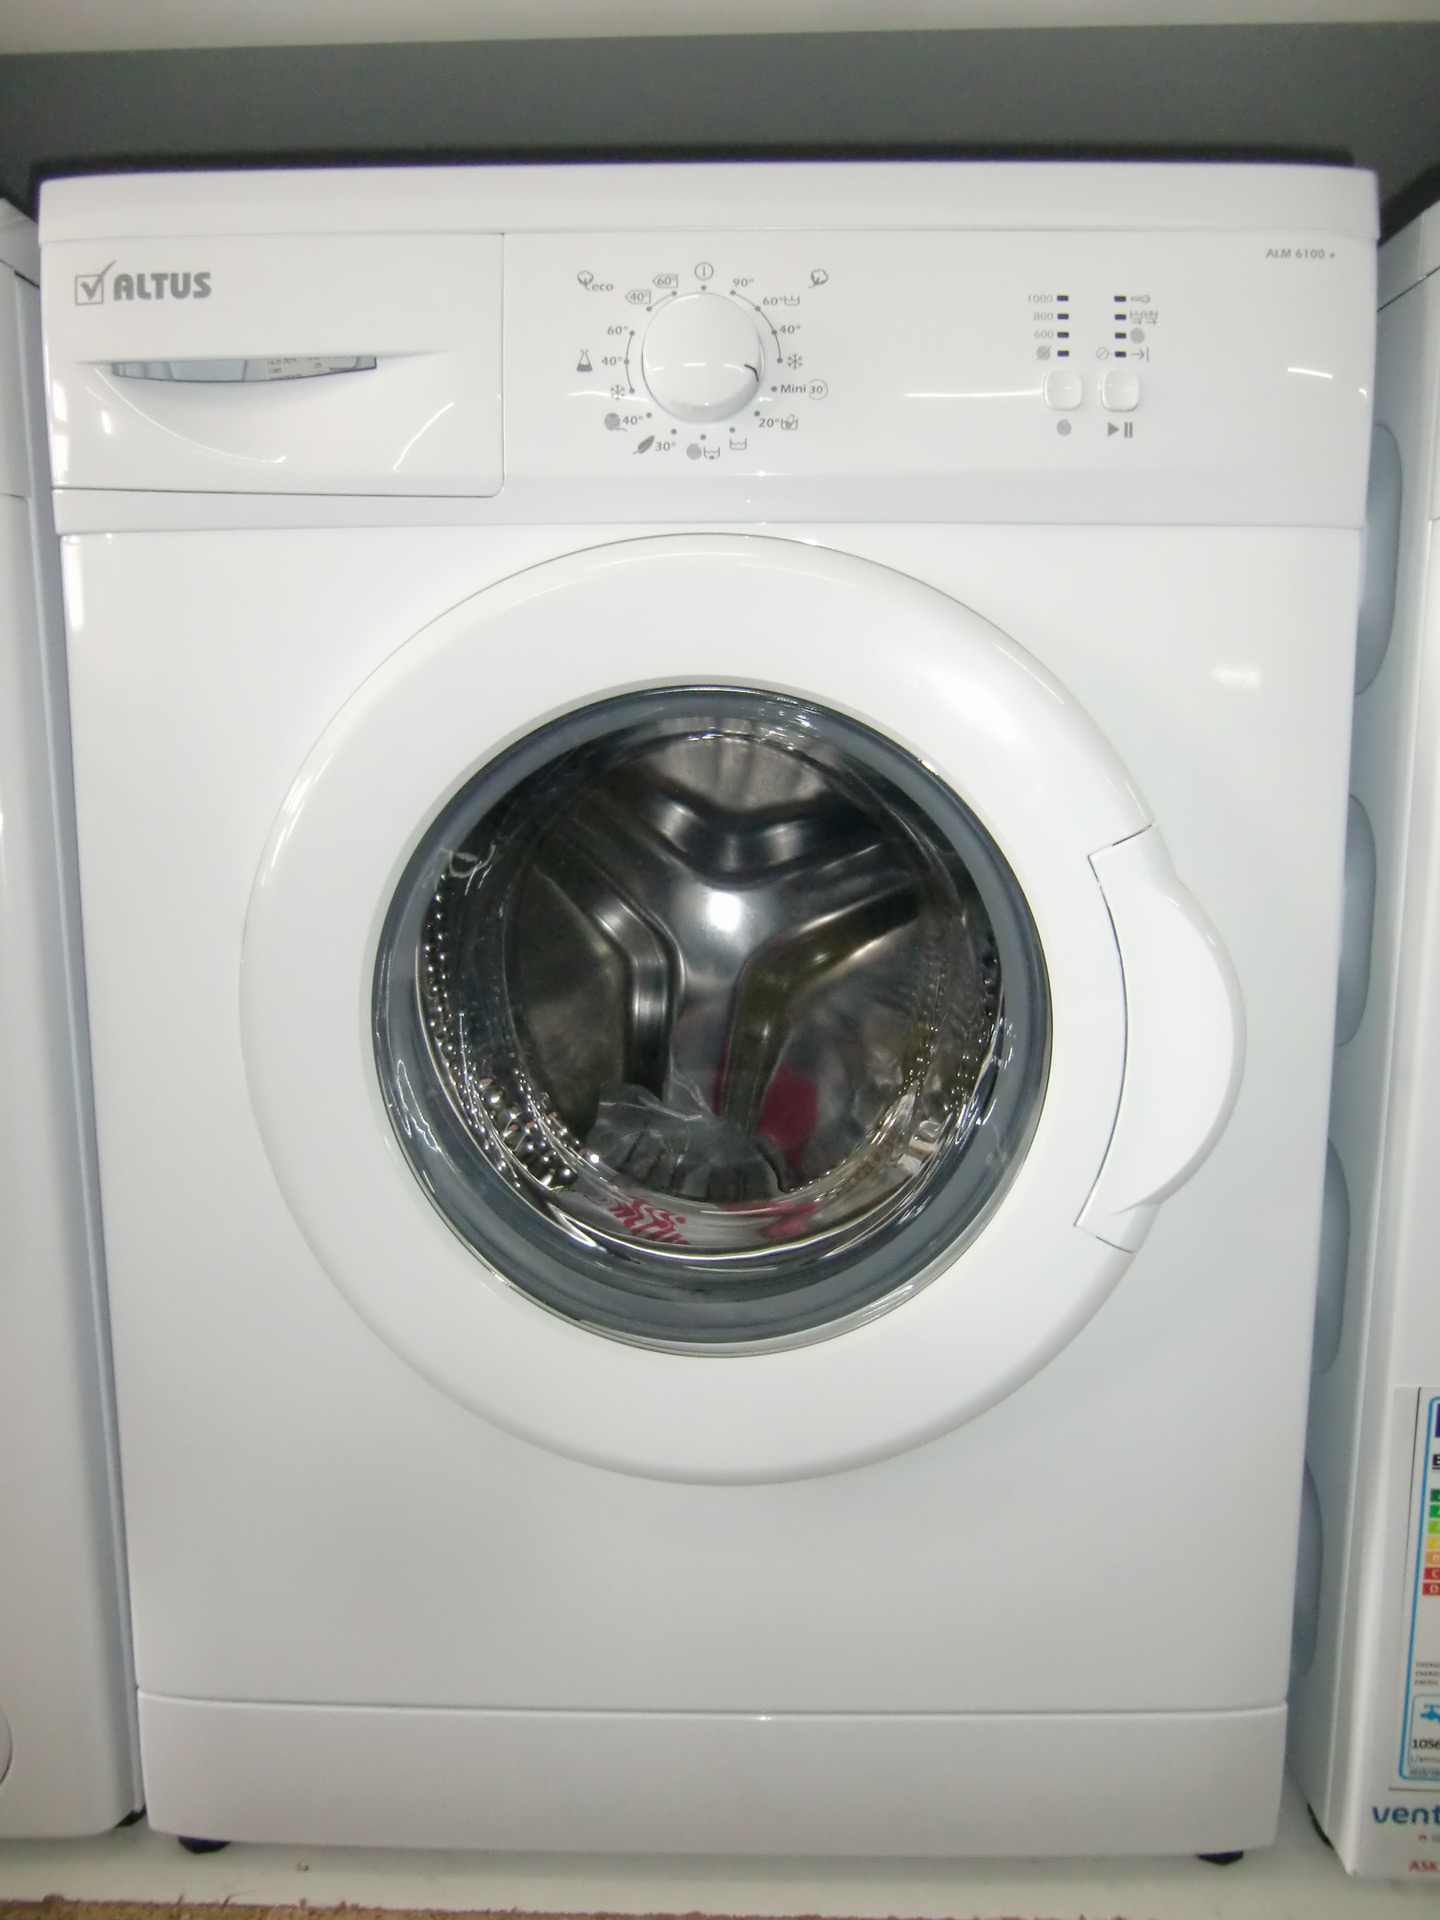 Appliances Repair Centre - Domestic Appliances - Repair & Parts